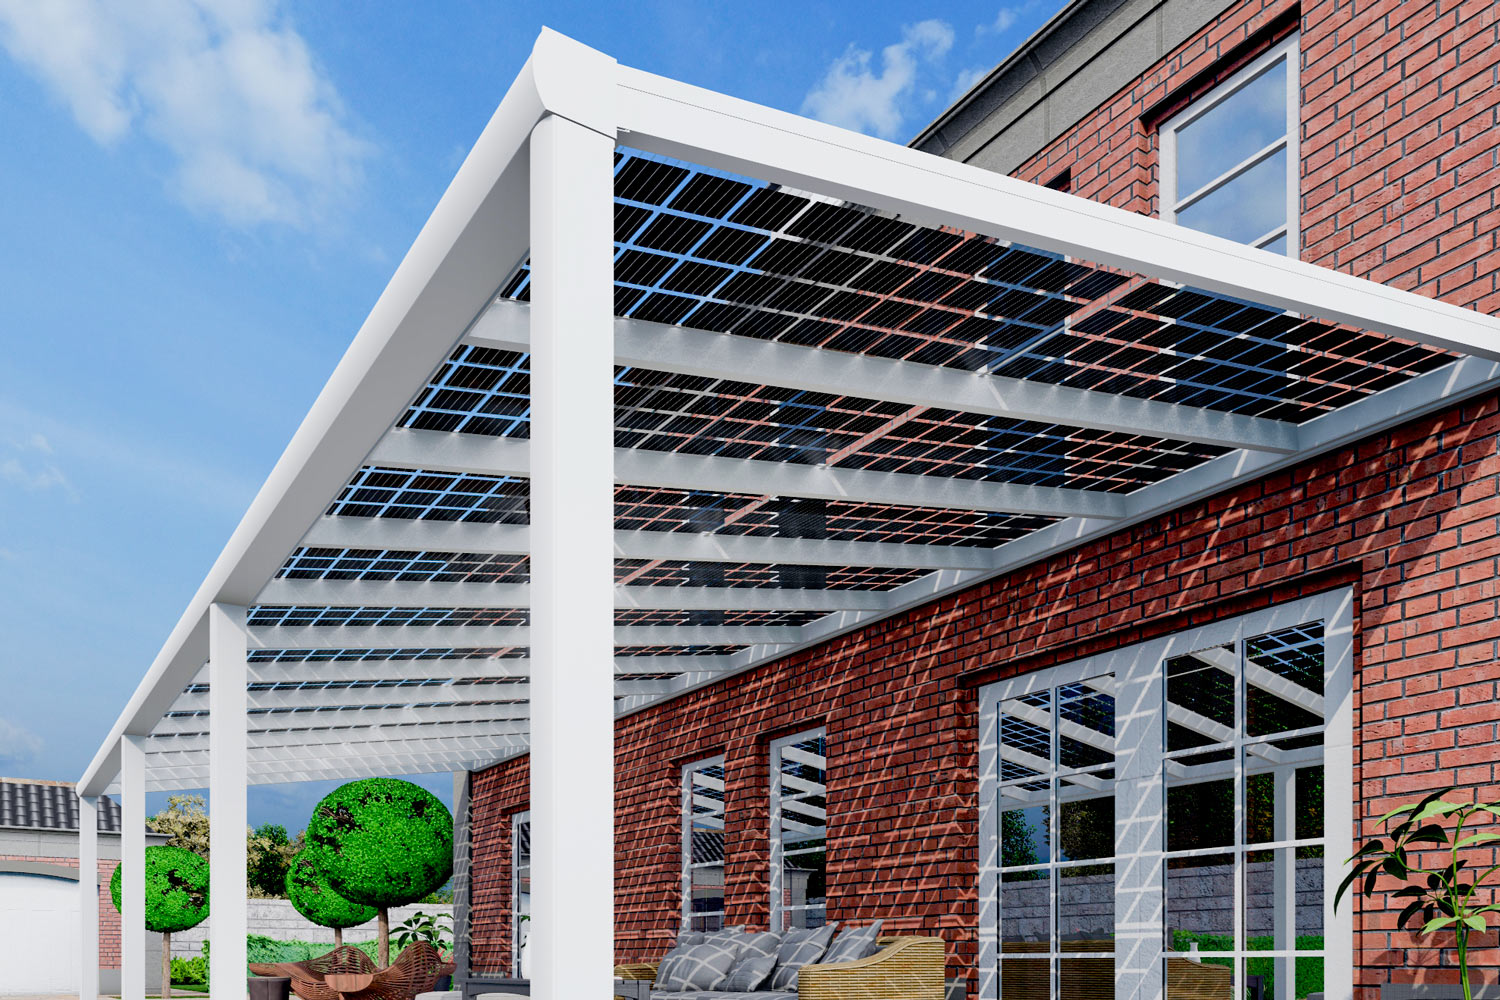 Solarpaneele, Photovoltaik Anlage auf einer Terrassenüberdachung